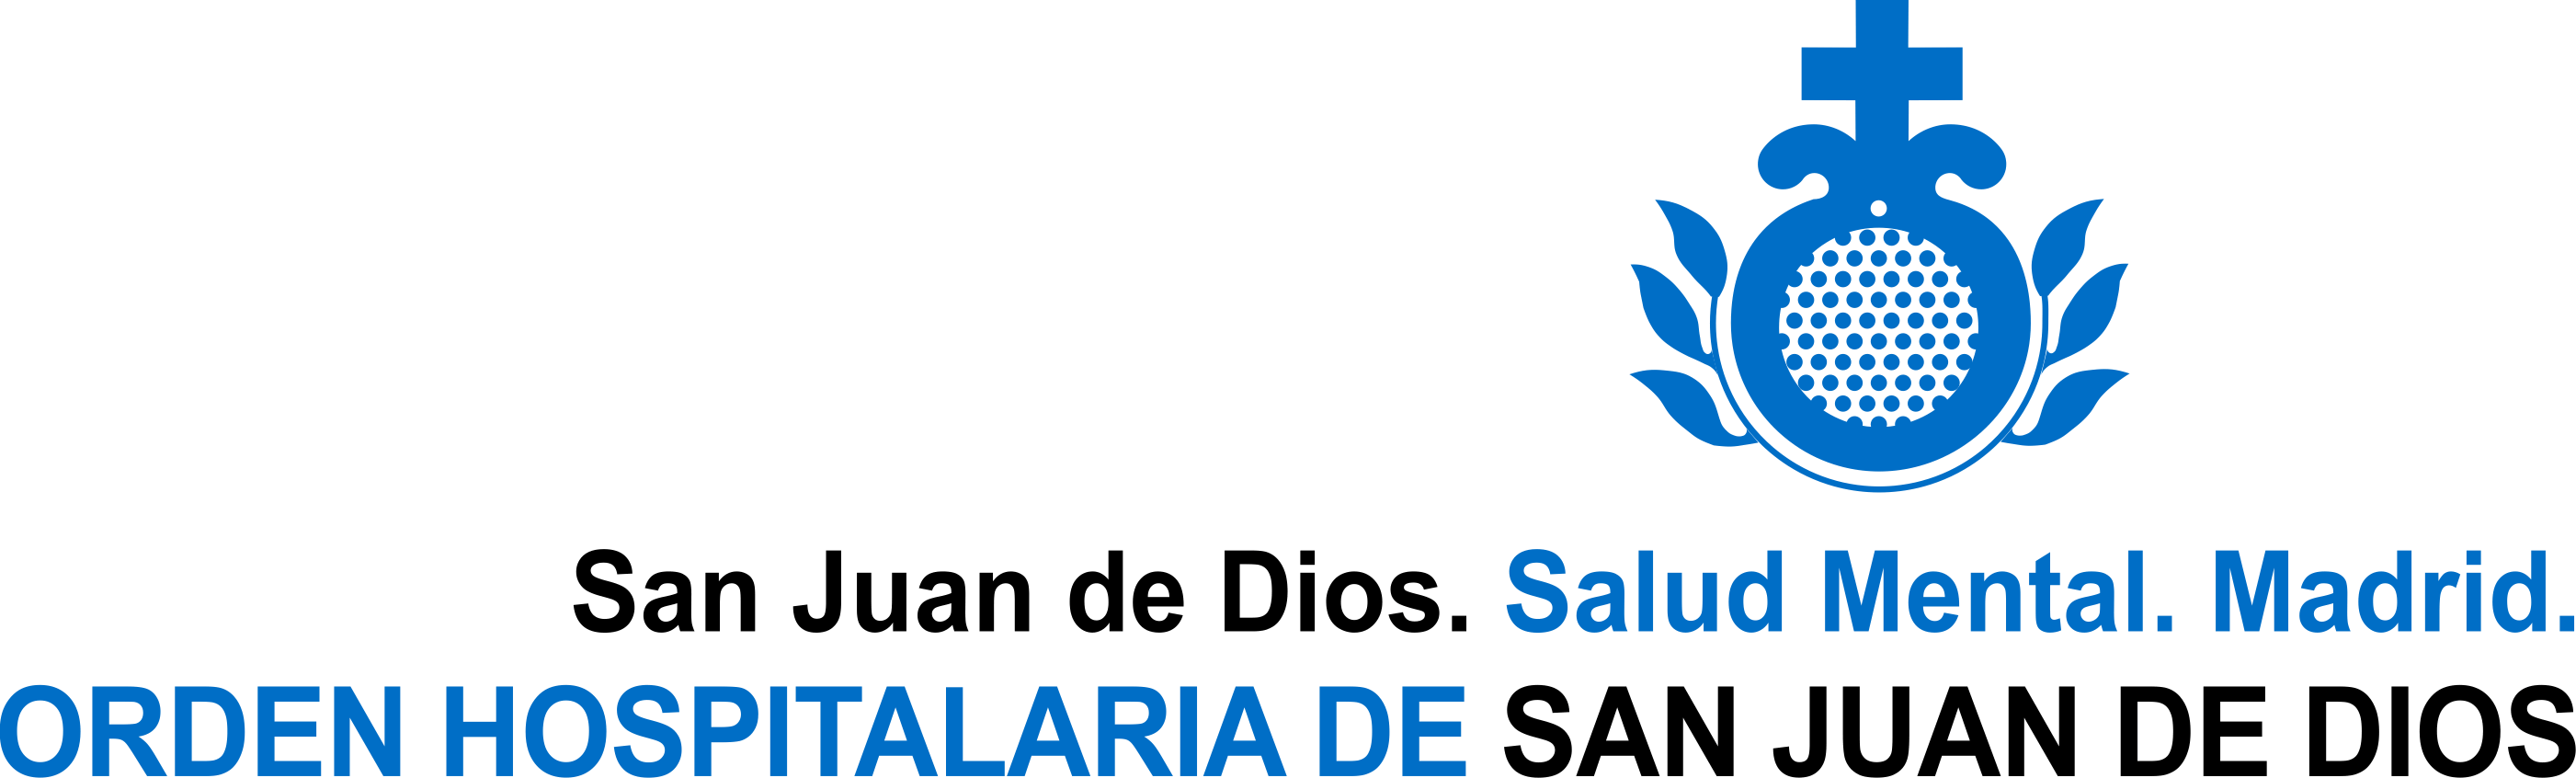 Centro San Juan de Dios